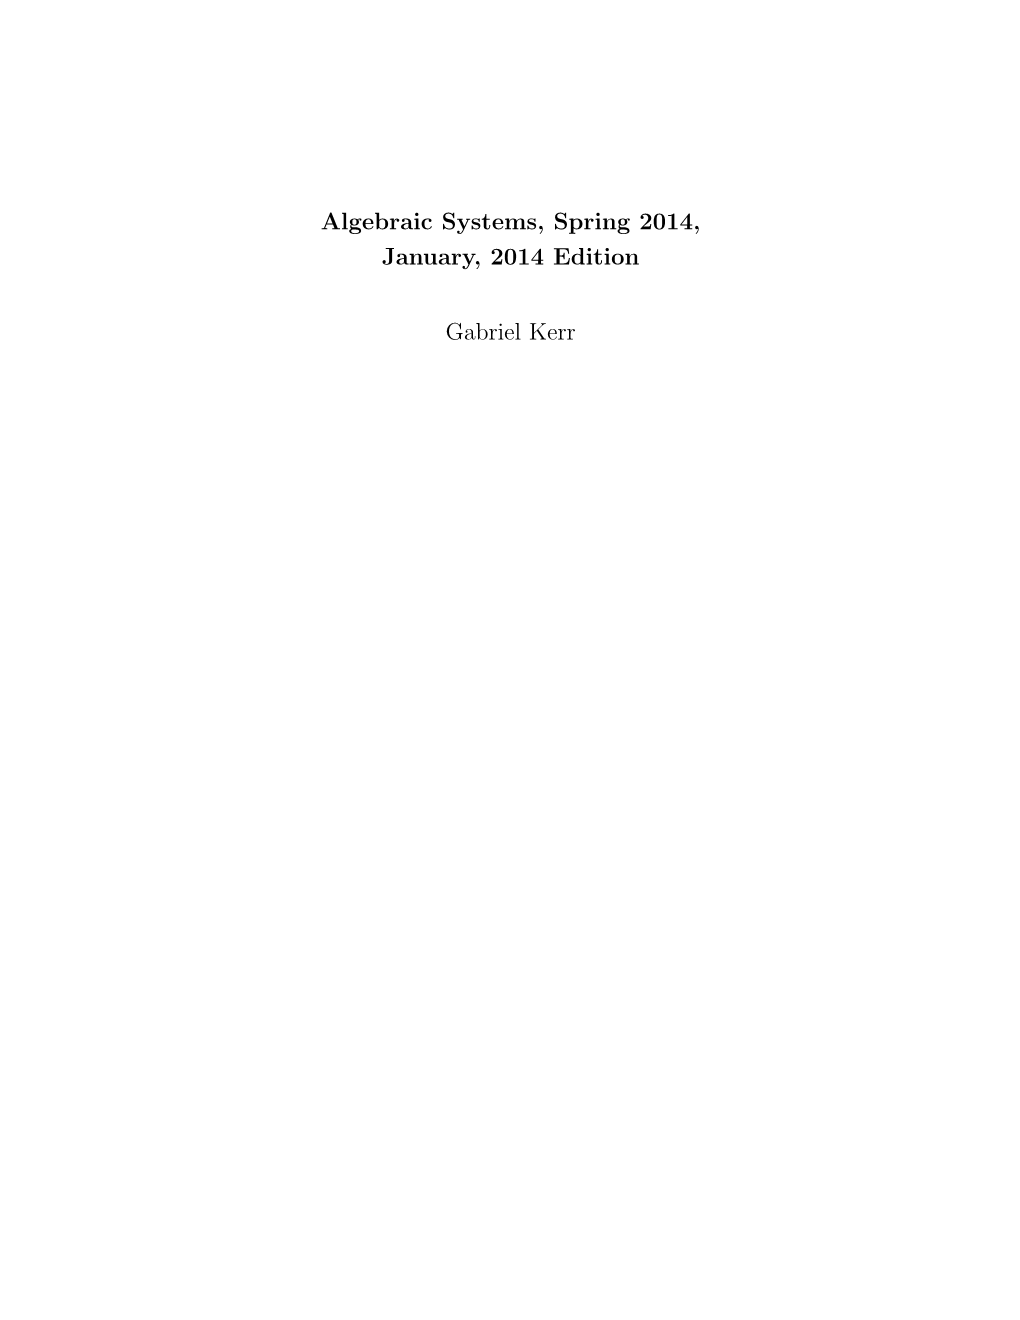 Algebraic Systems, Spring 2014, January, 2014 Edition Gabriel Kerr